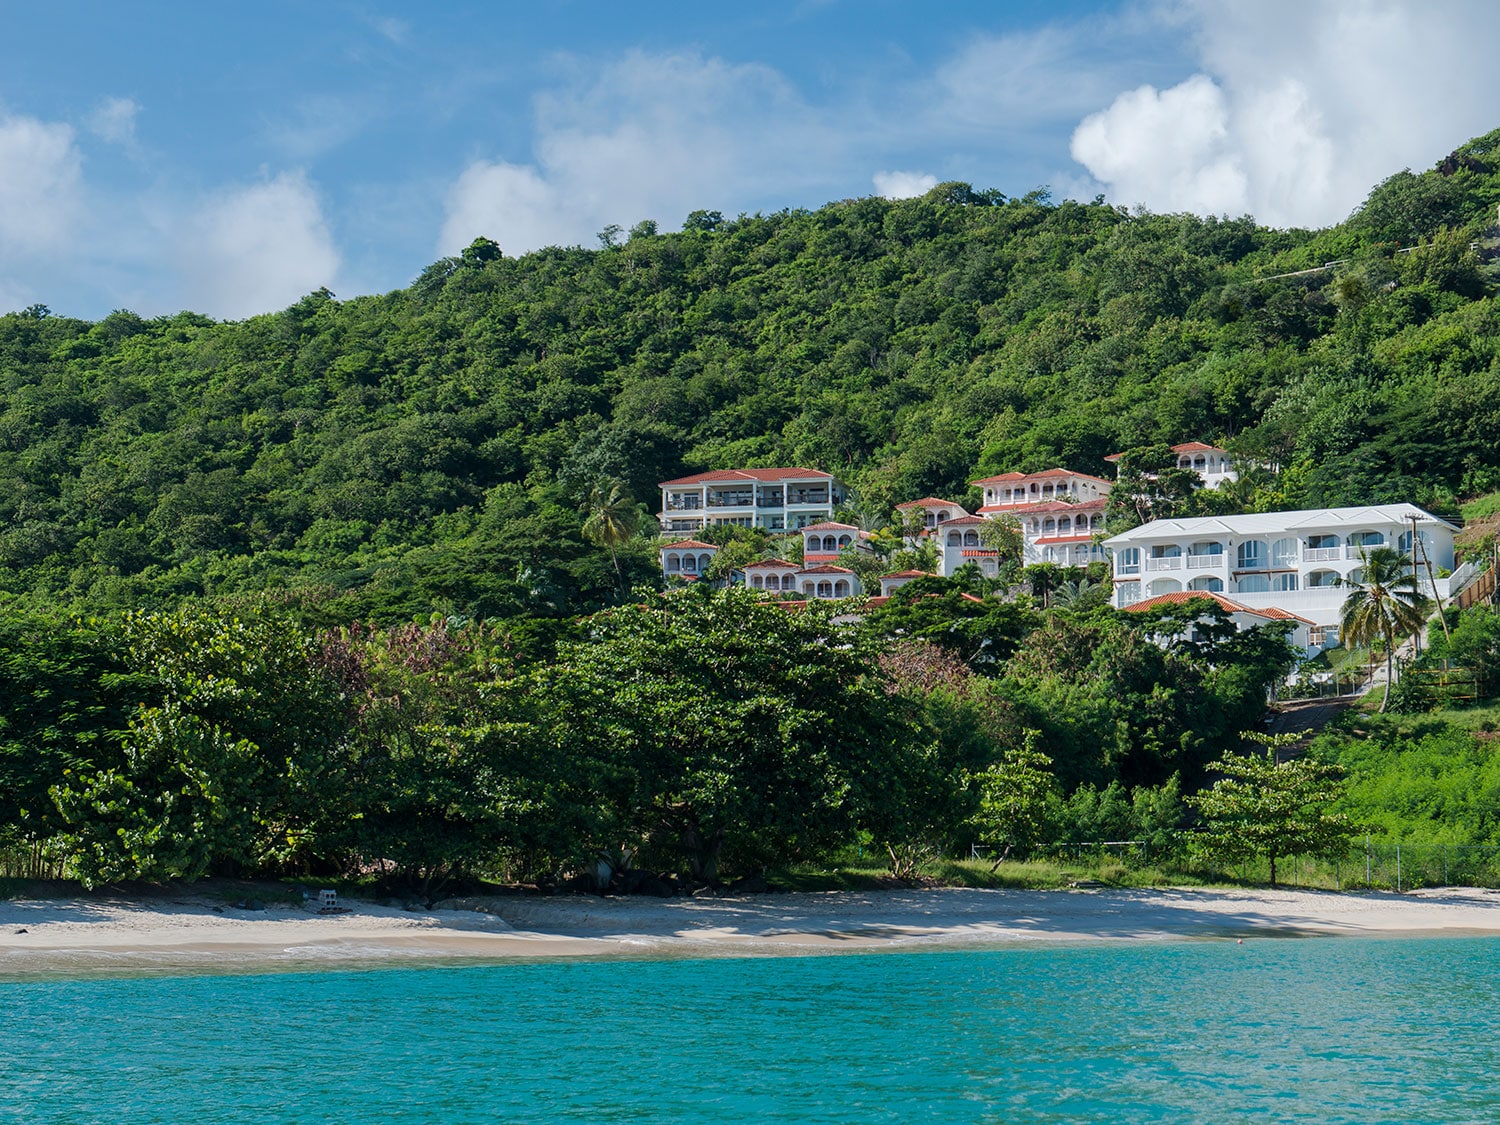 An exterior view of Mount Cinnamon Resort in Grenada.